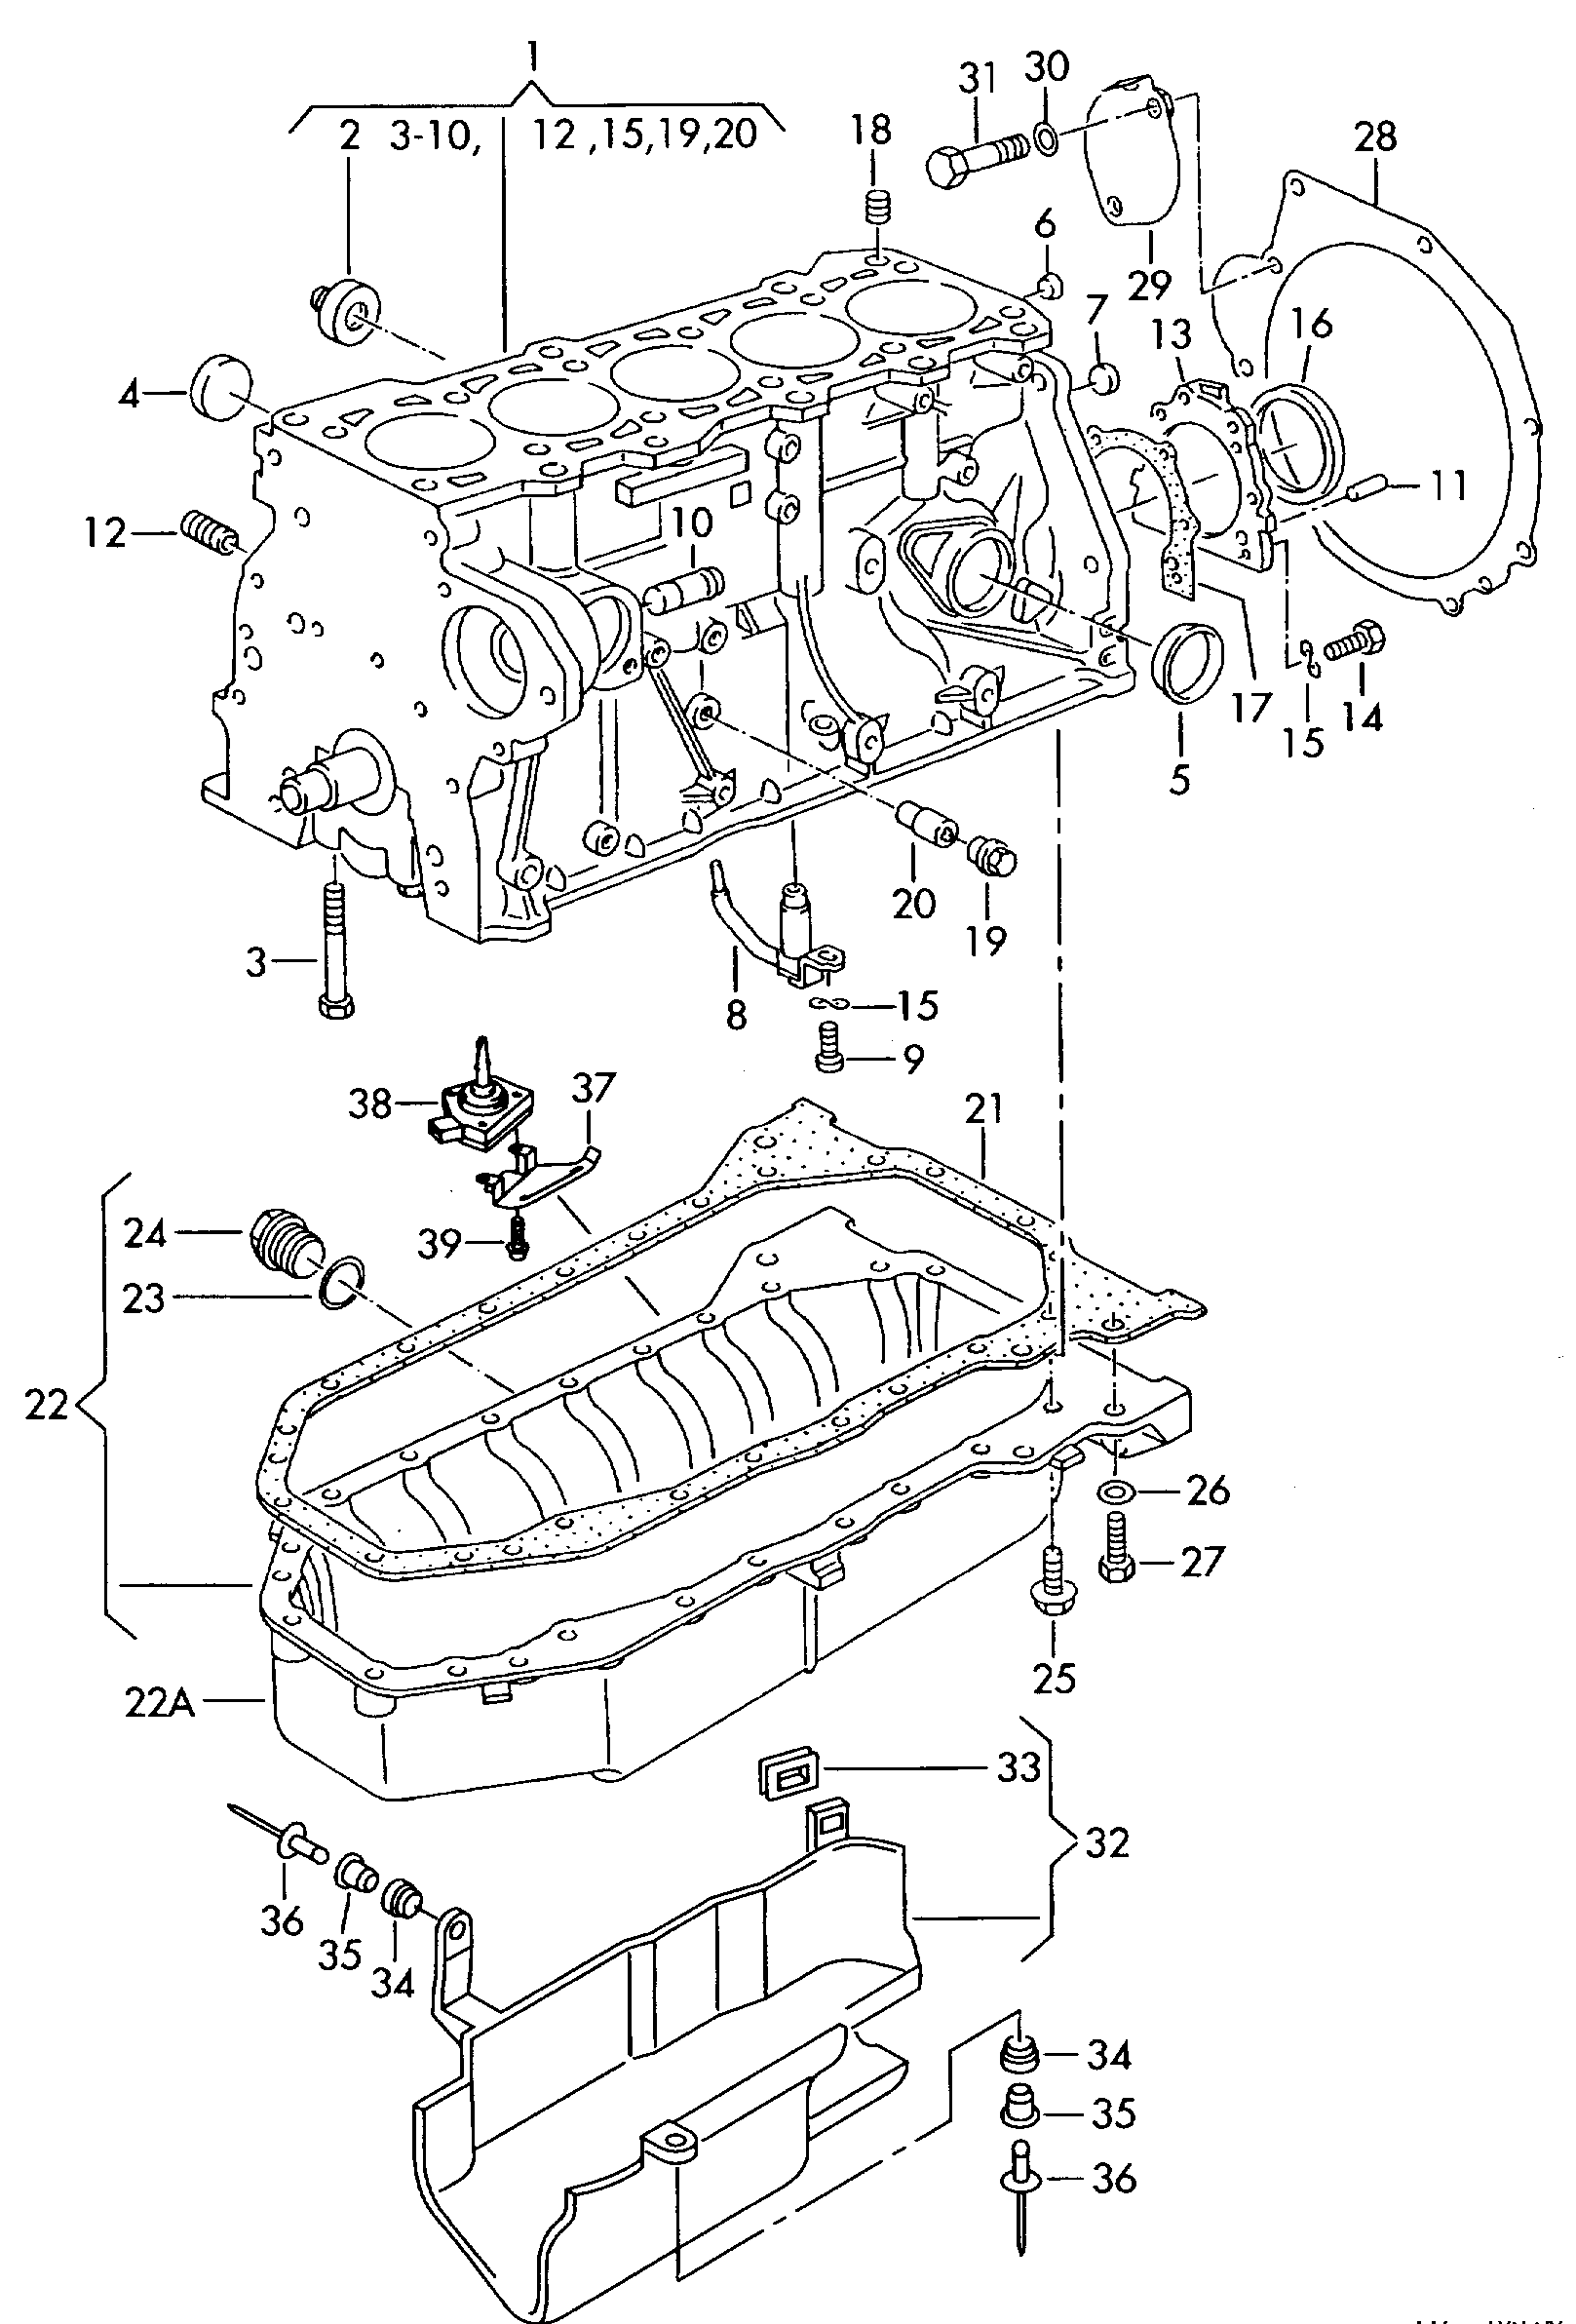 cilinderblok met zuigers; carterpan - Transporter(TR)  